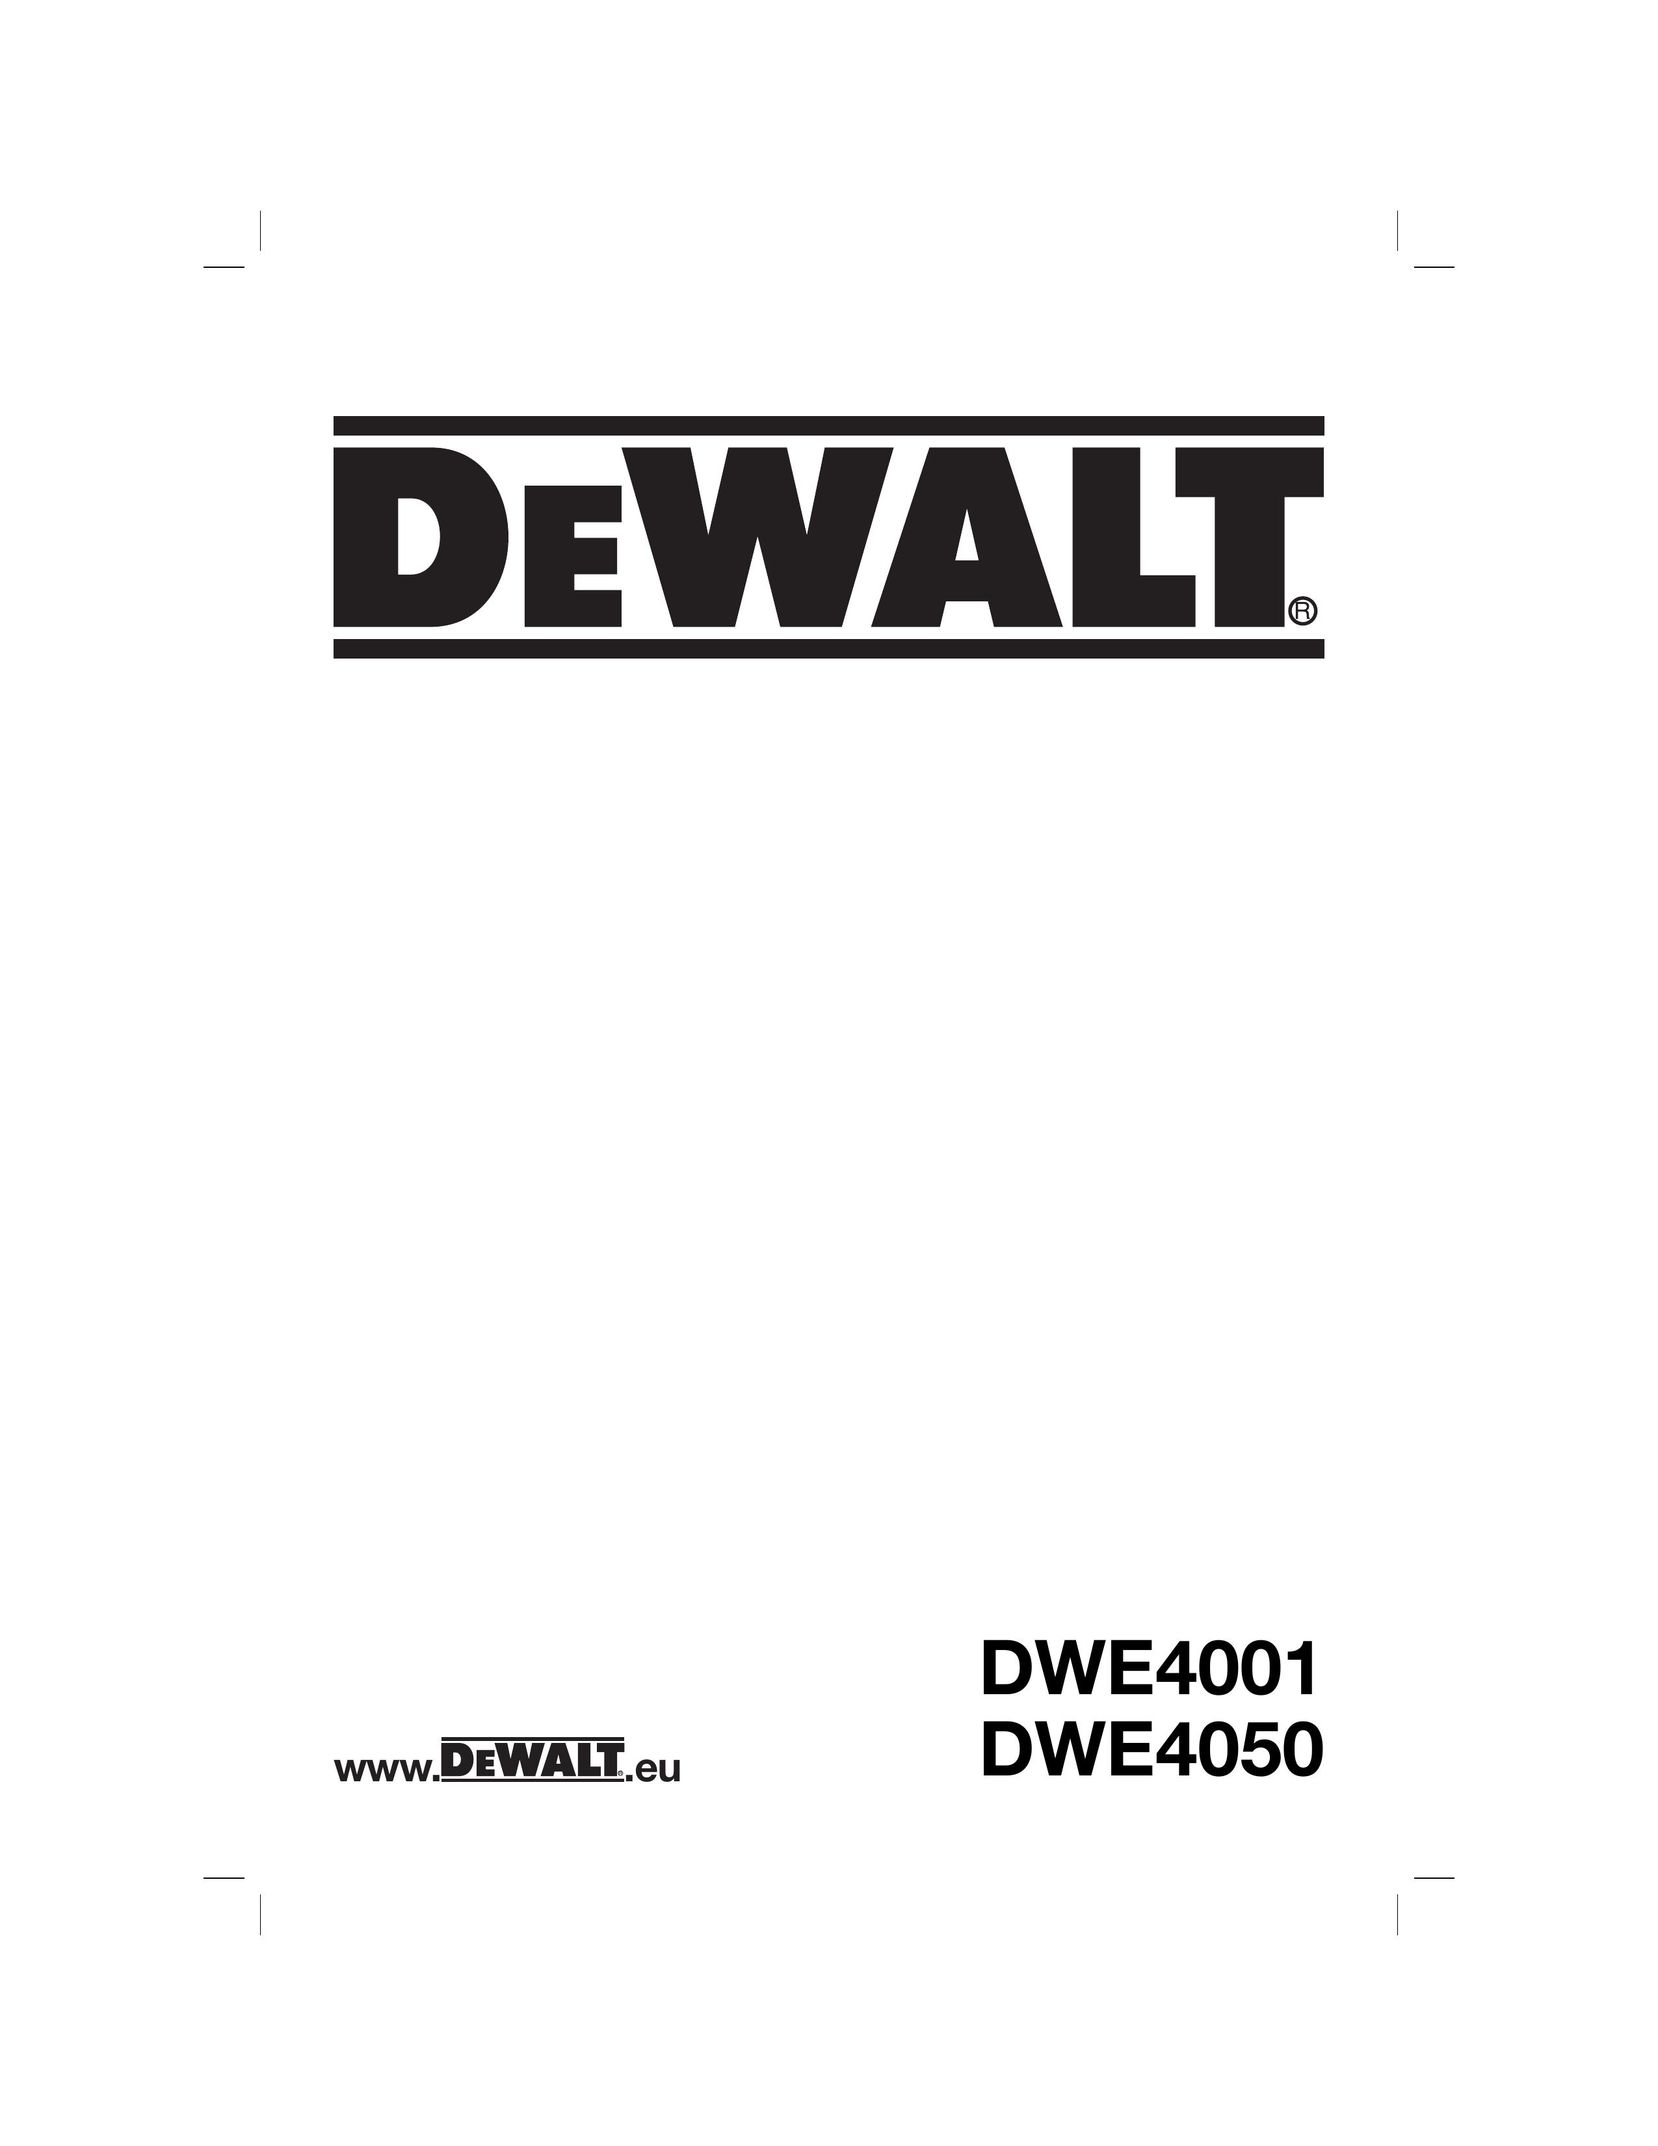 DeWalt DWE4050 Grinder User Manual